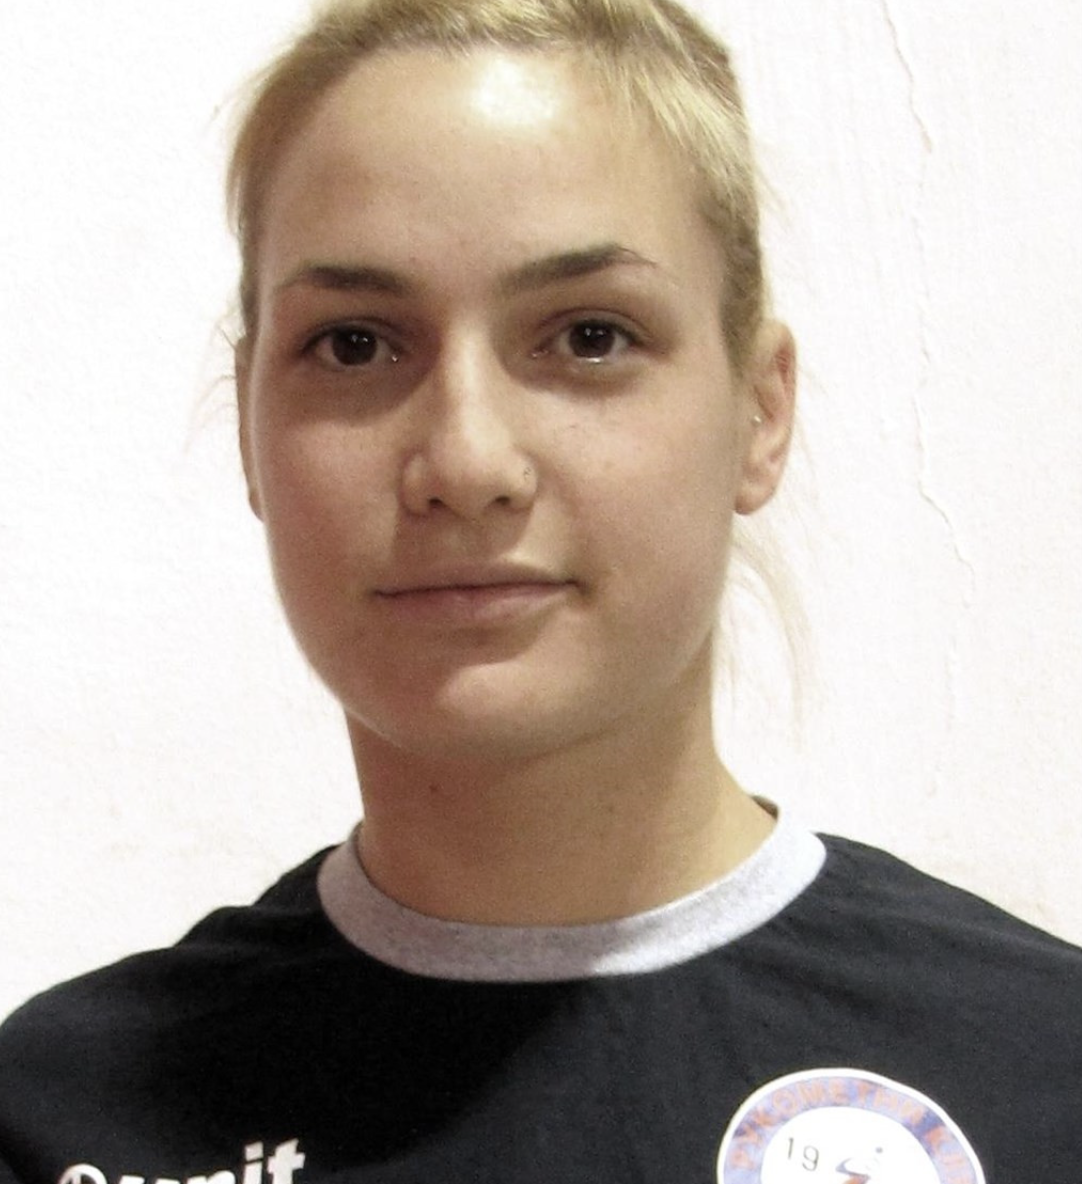 Jelena Terzic kjem til Volda frå Serbia.